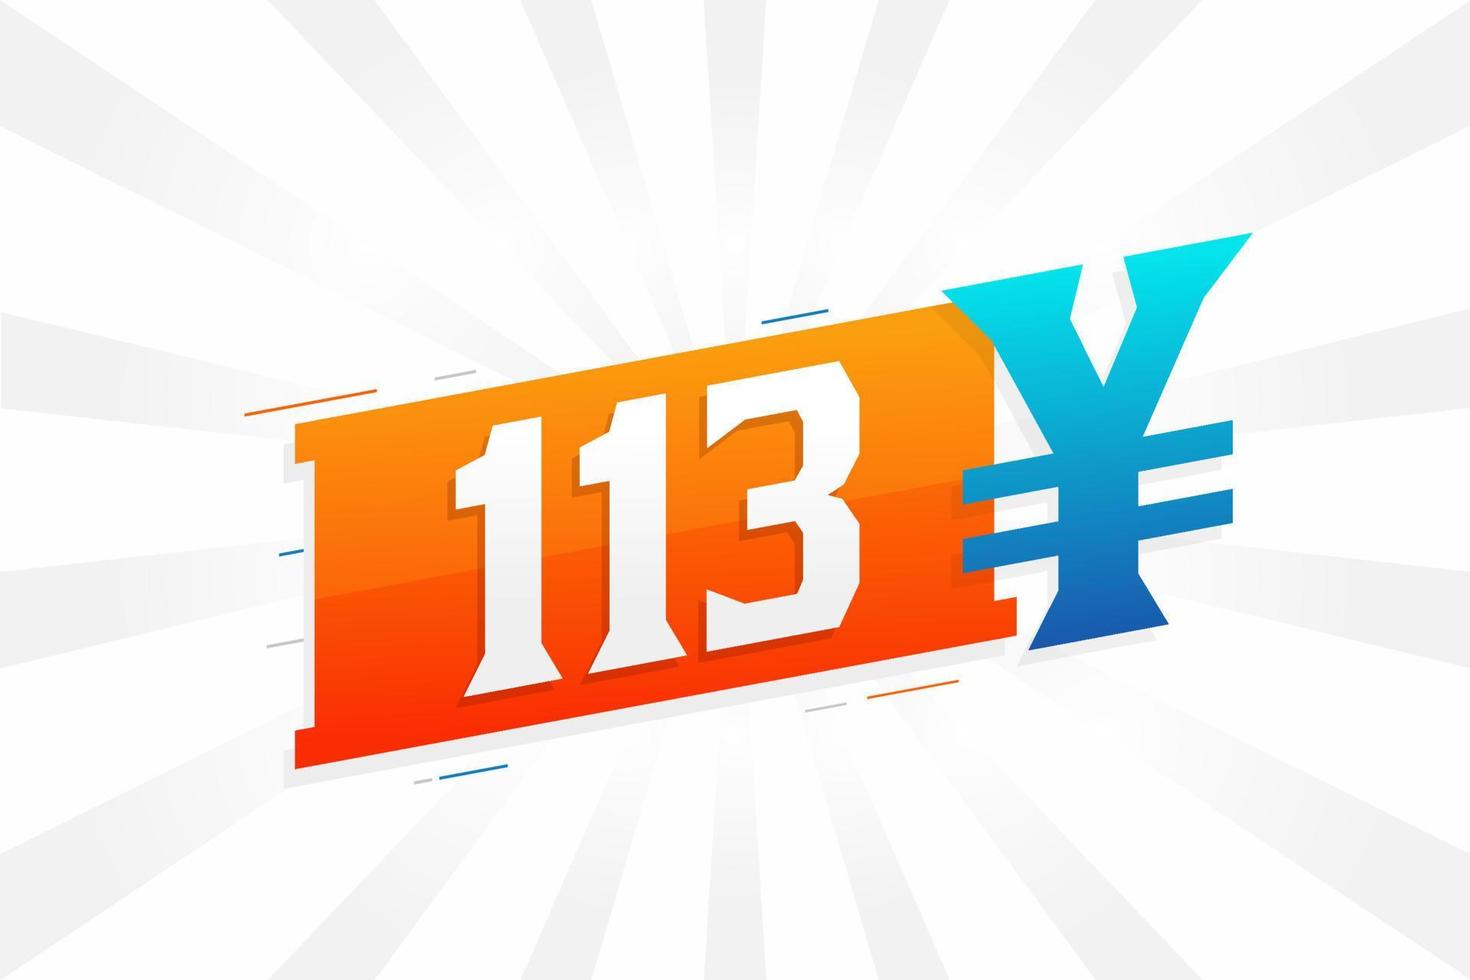 Símbolo de texto de vetor de moeda chinesa de 113 yuan. Vetor de estoque de dinheiro de moeda japonesa de 113 ienes